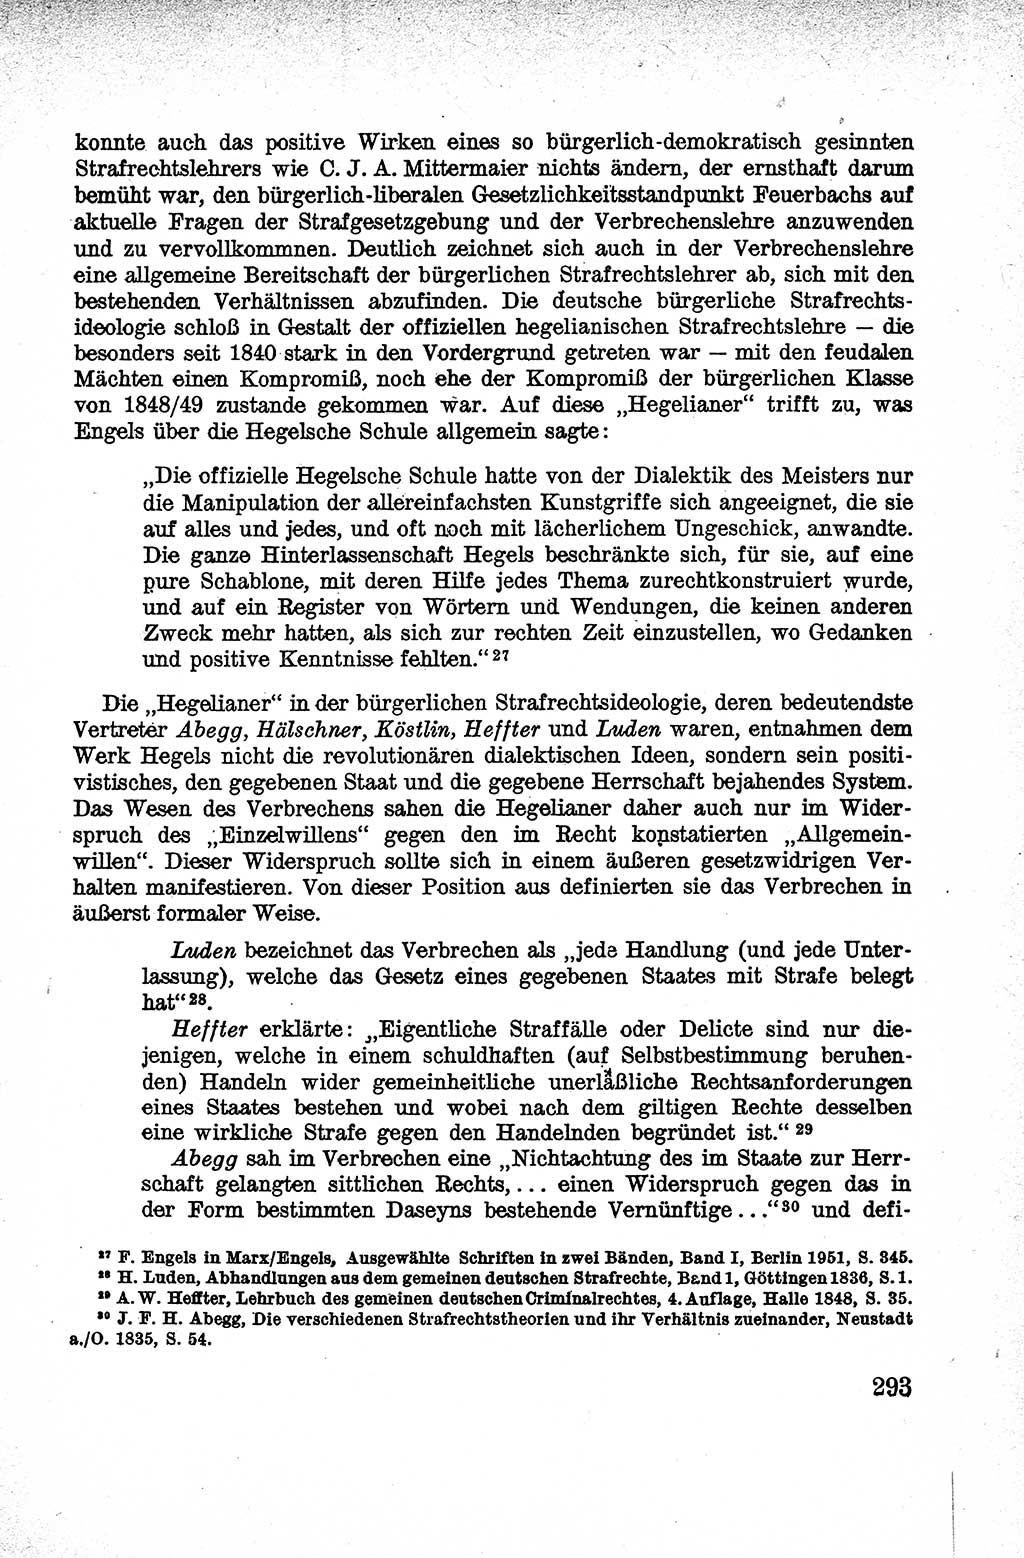 Lehrbuch des Strafrechts der Deutschen Demokratischen Republik (DDR), Allgemeiner Teil 1959, Seite 293 (Lb. Strafr. DDR AT 1959, S. 293)